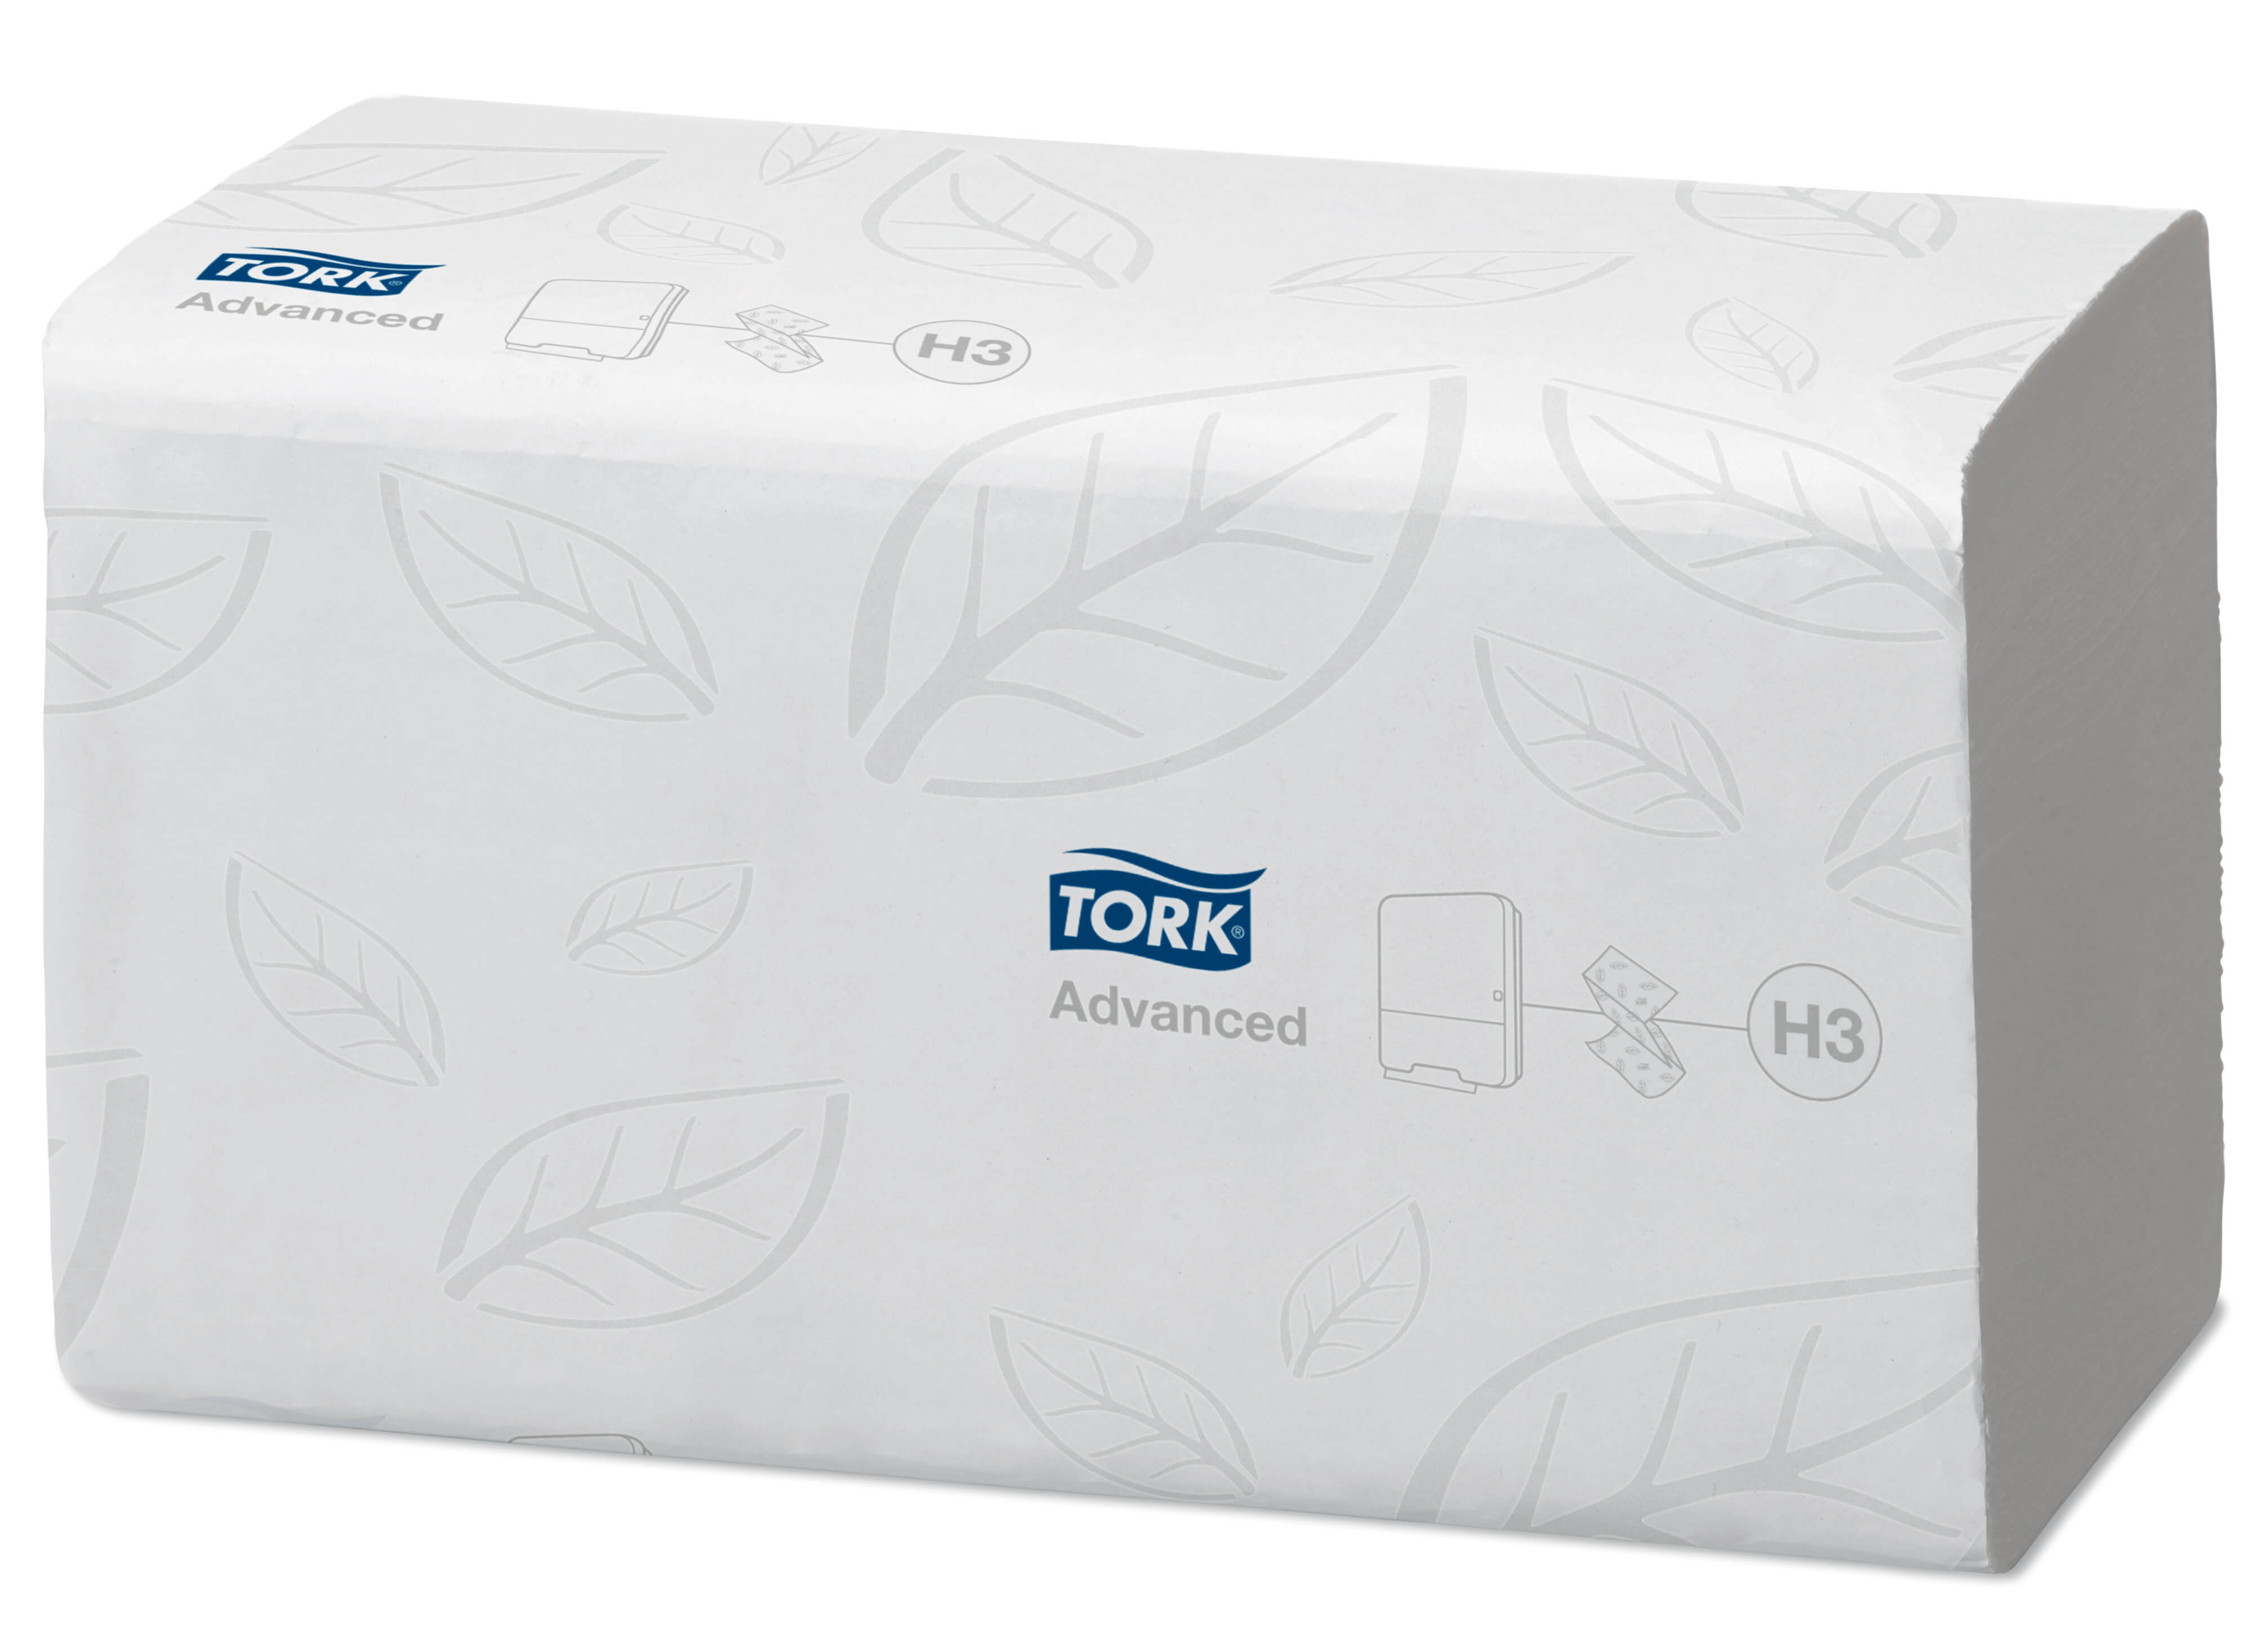 Листовые бумажные полотенца Tork Advanced двухслойные, Singlefold сложения ZZ, 250 листов (белые)